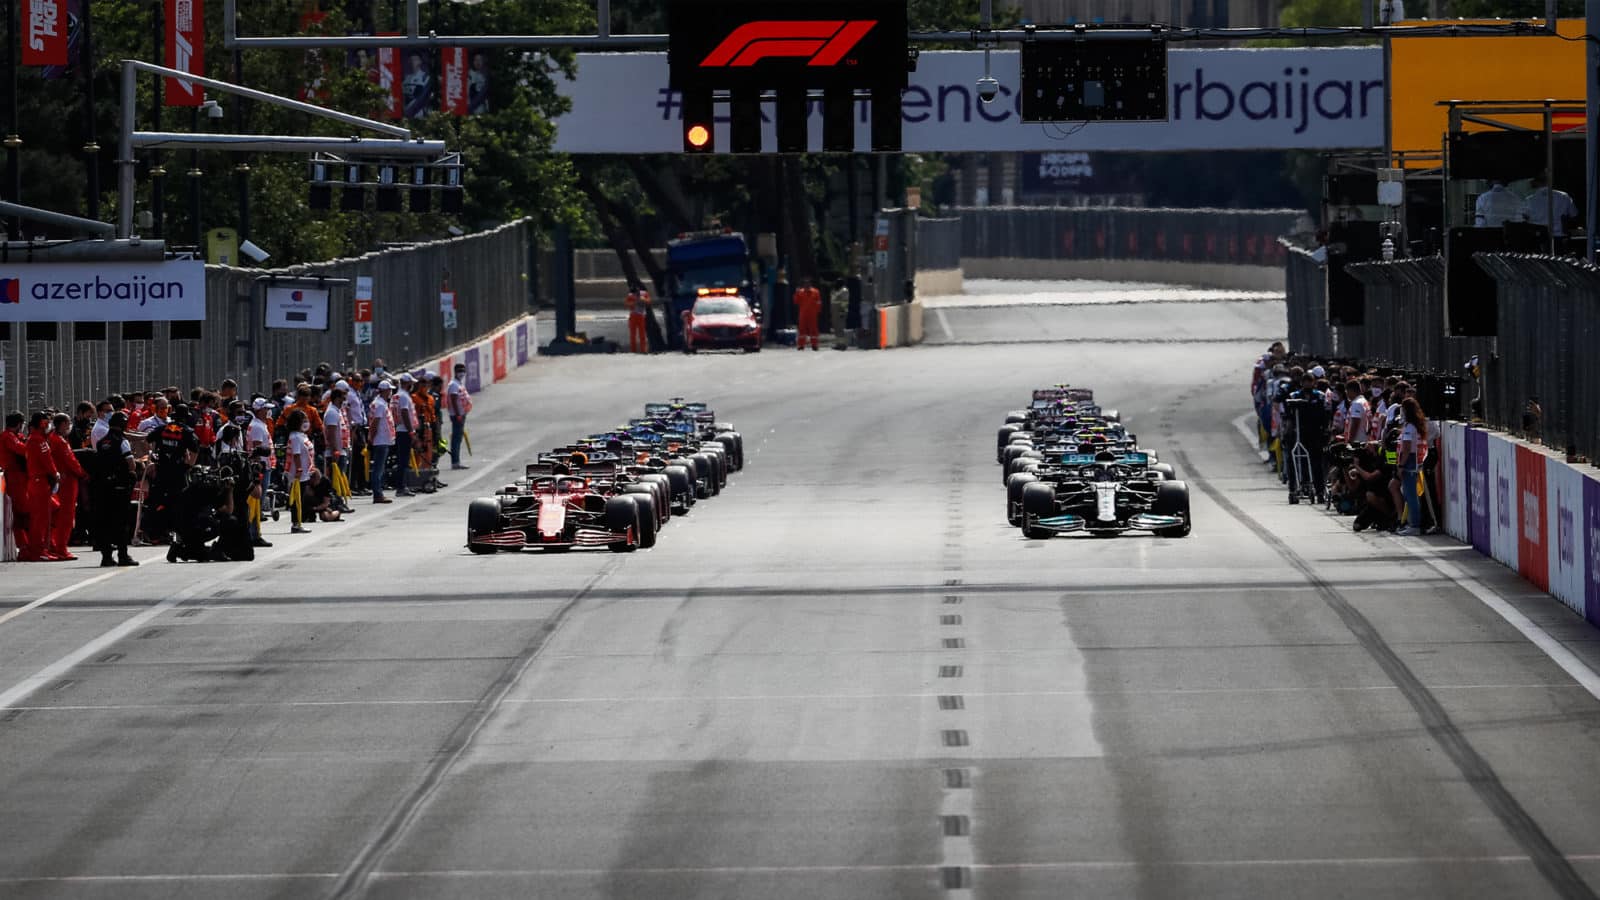 F1 grid at the 2021 Azerbaijan Grand Prix